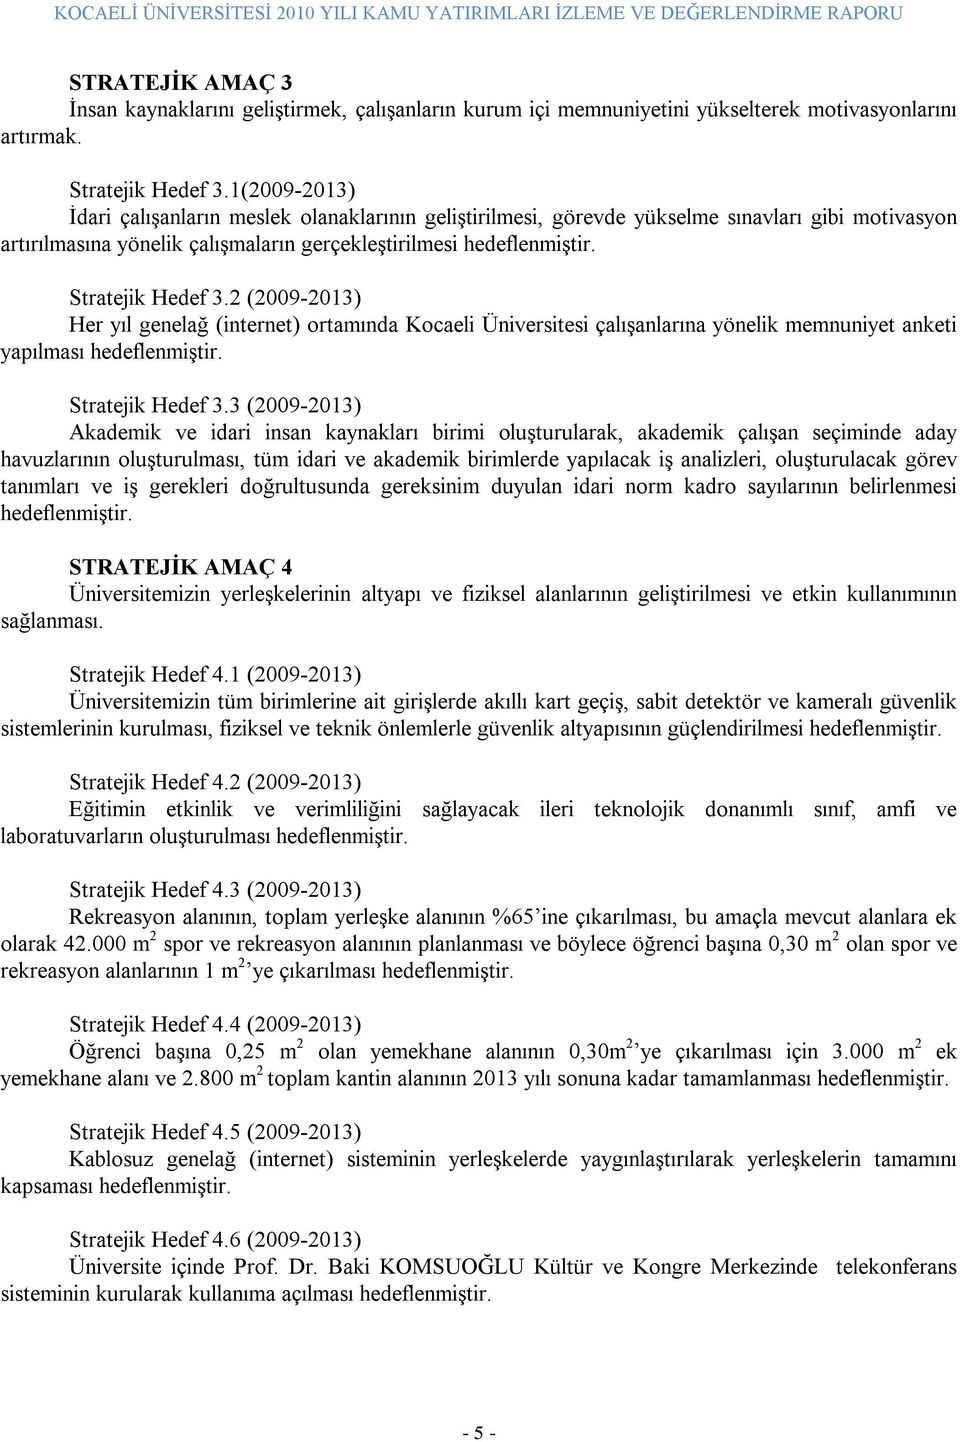 2 (2009-2013) Her yıl genelağ (internet) ortamında Kocaeli Üniversitesi çalışanlarına yönelik memnuniyet anketi yapılması hedeflenmiştir. Stratejik Hedef 3.